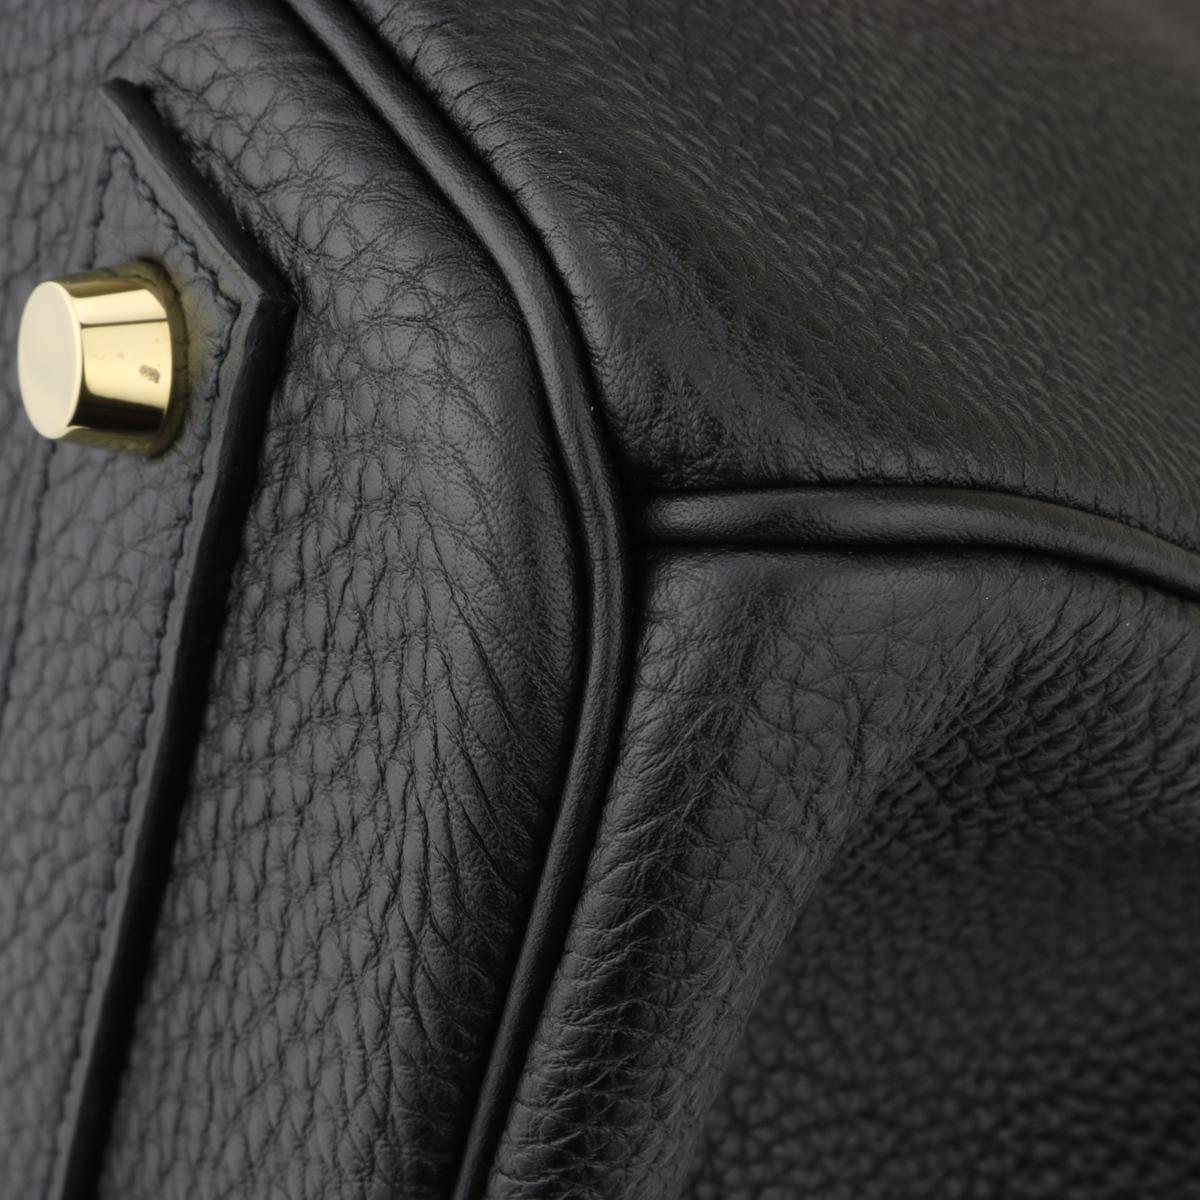 Hermès Birkin Bag 40cm Black Togo Leather with Gold Hardware Stamp N 2010 1